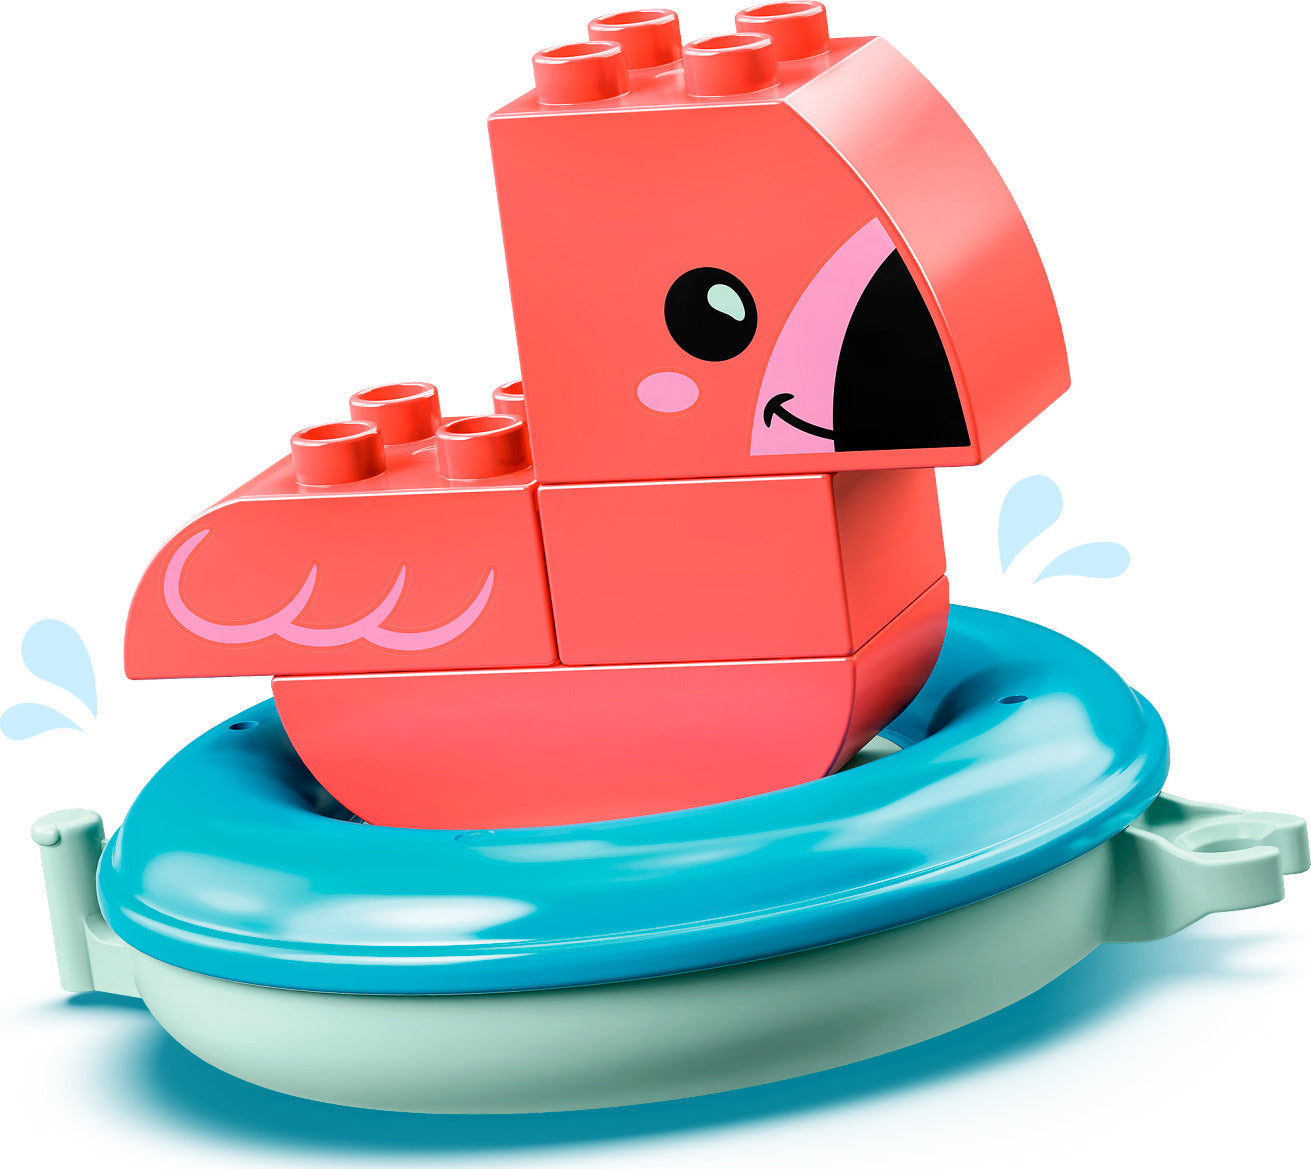 LEGO® DUPLO® Bath Time Fun: Floating Animal Island